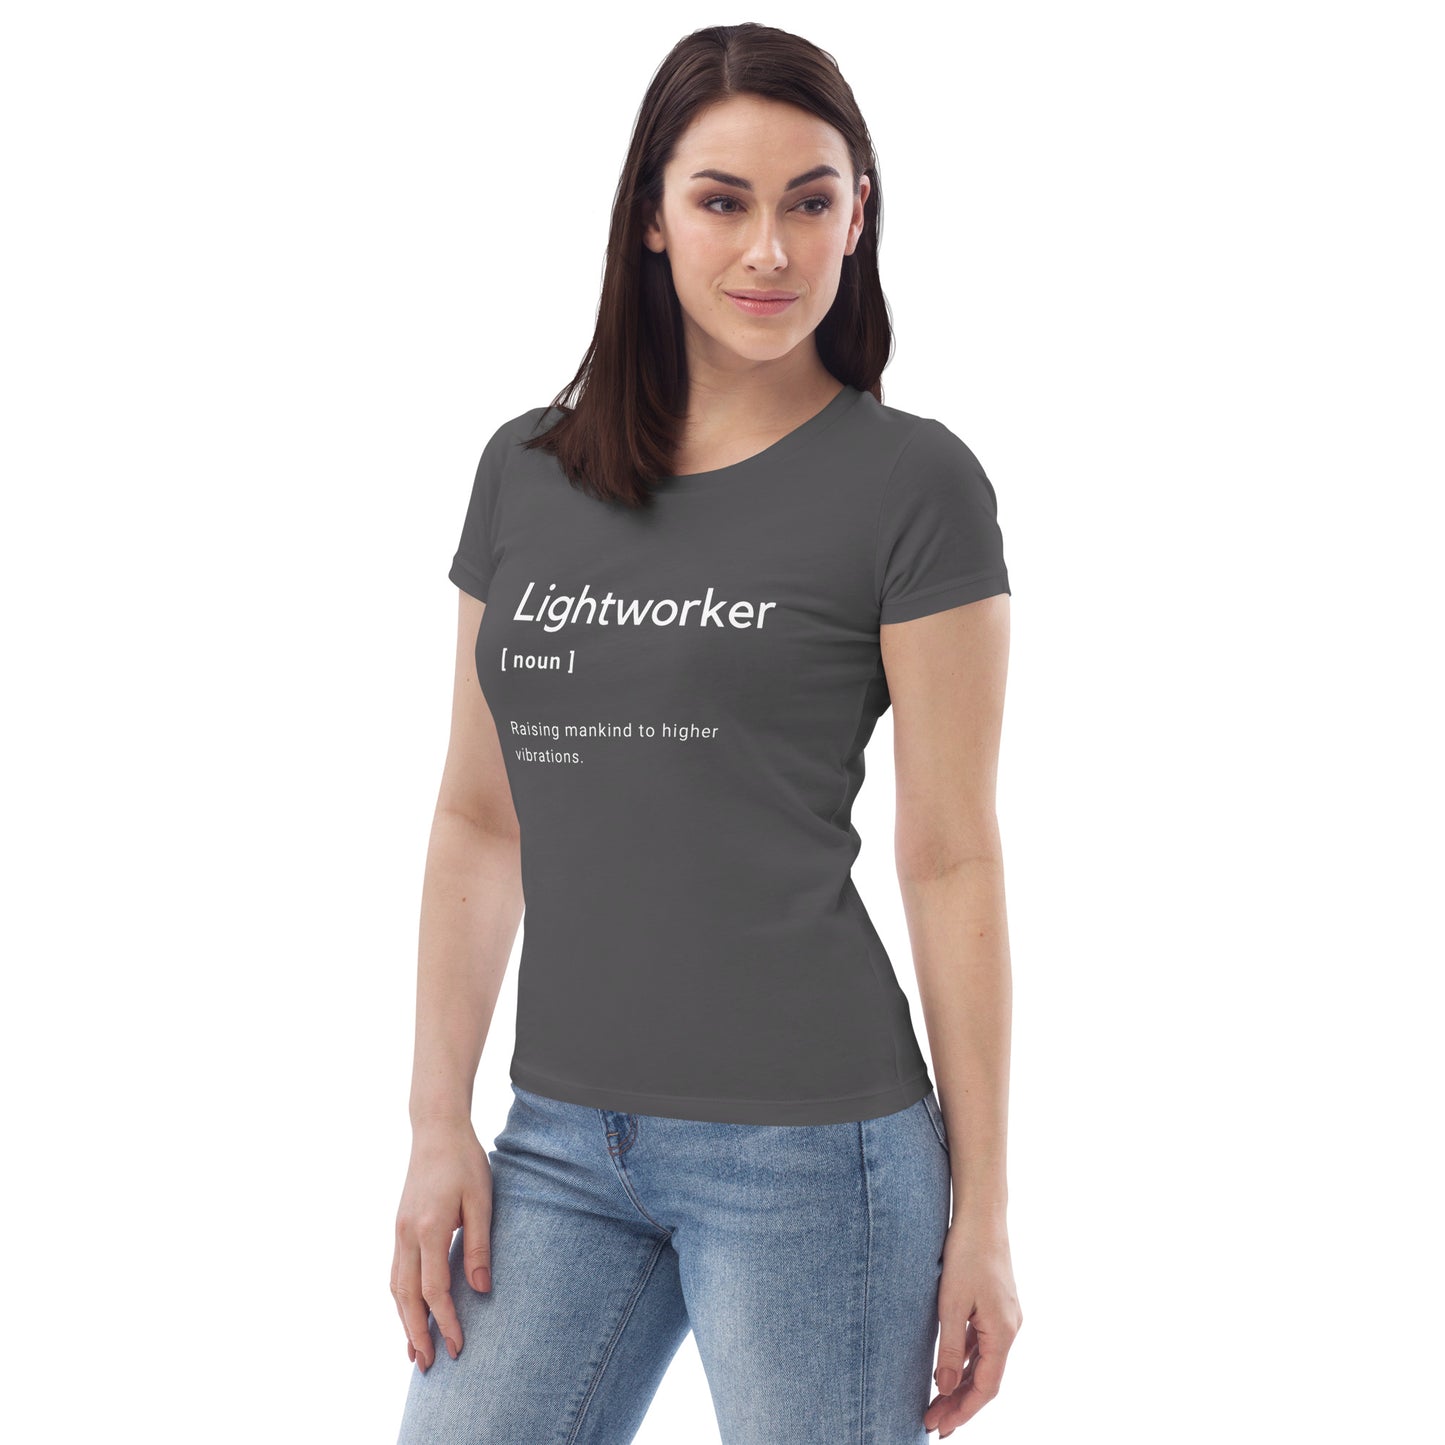 Lightworker t-shirt